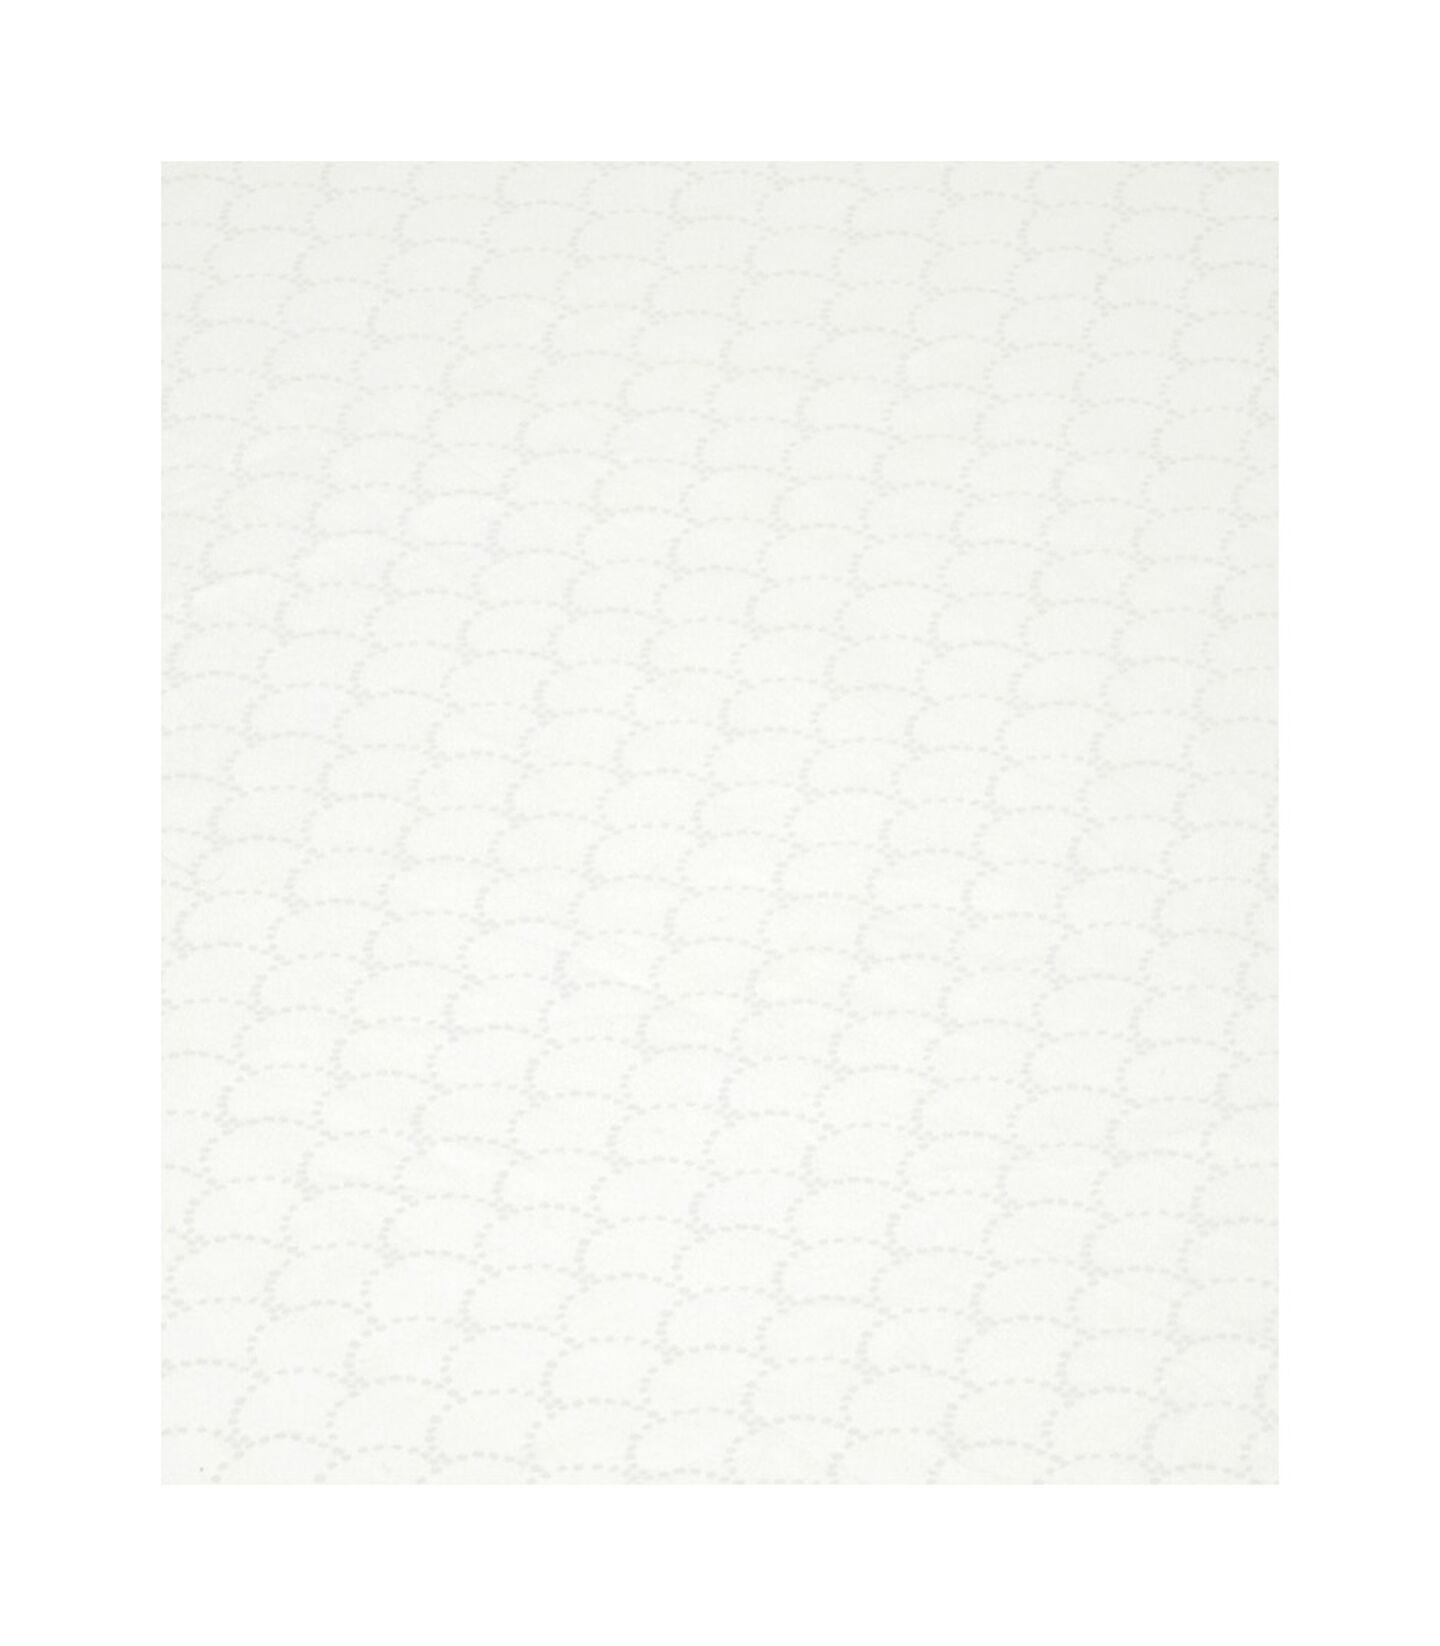 Stokke® Sleepi™ Fitted Sheet Fans Grey. Pattern. view 5